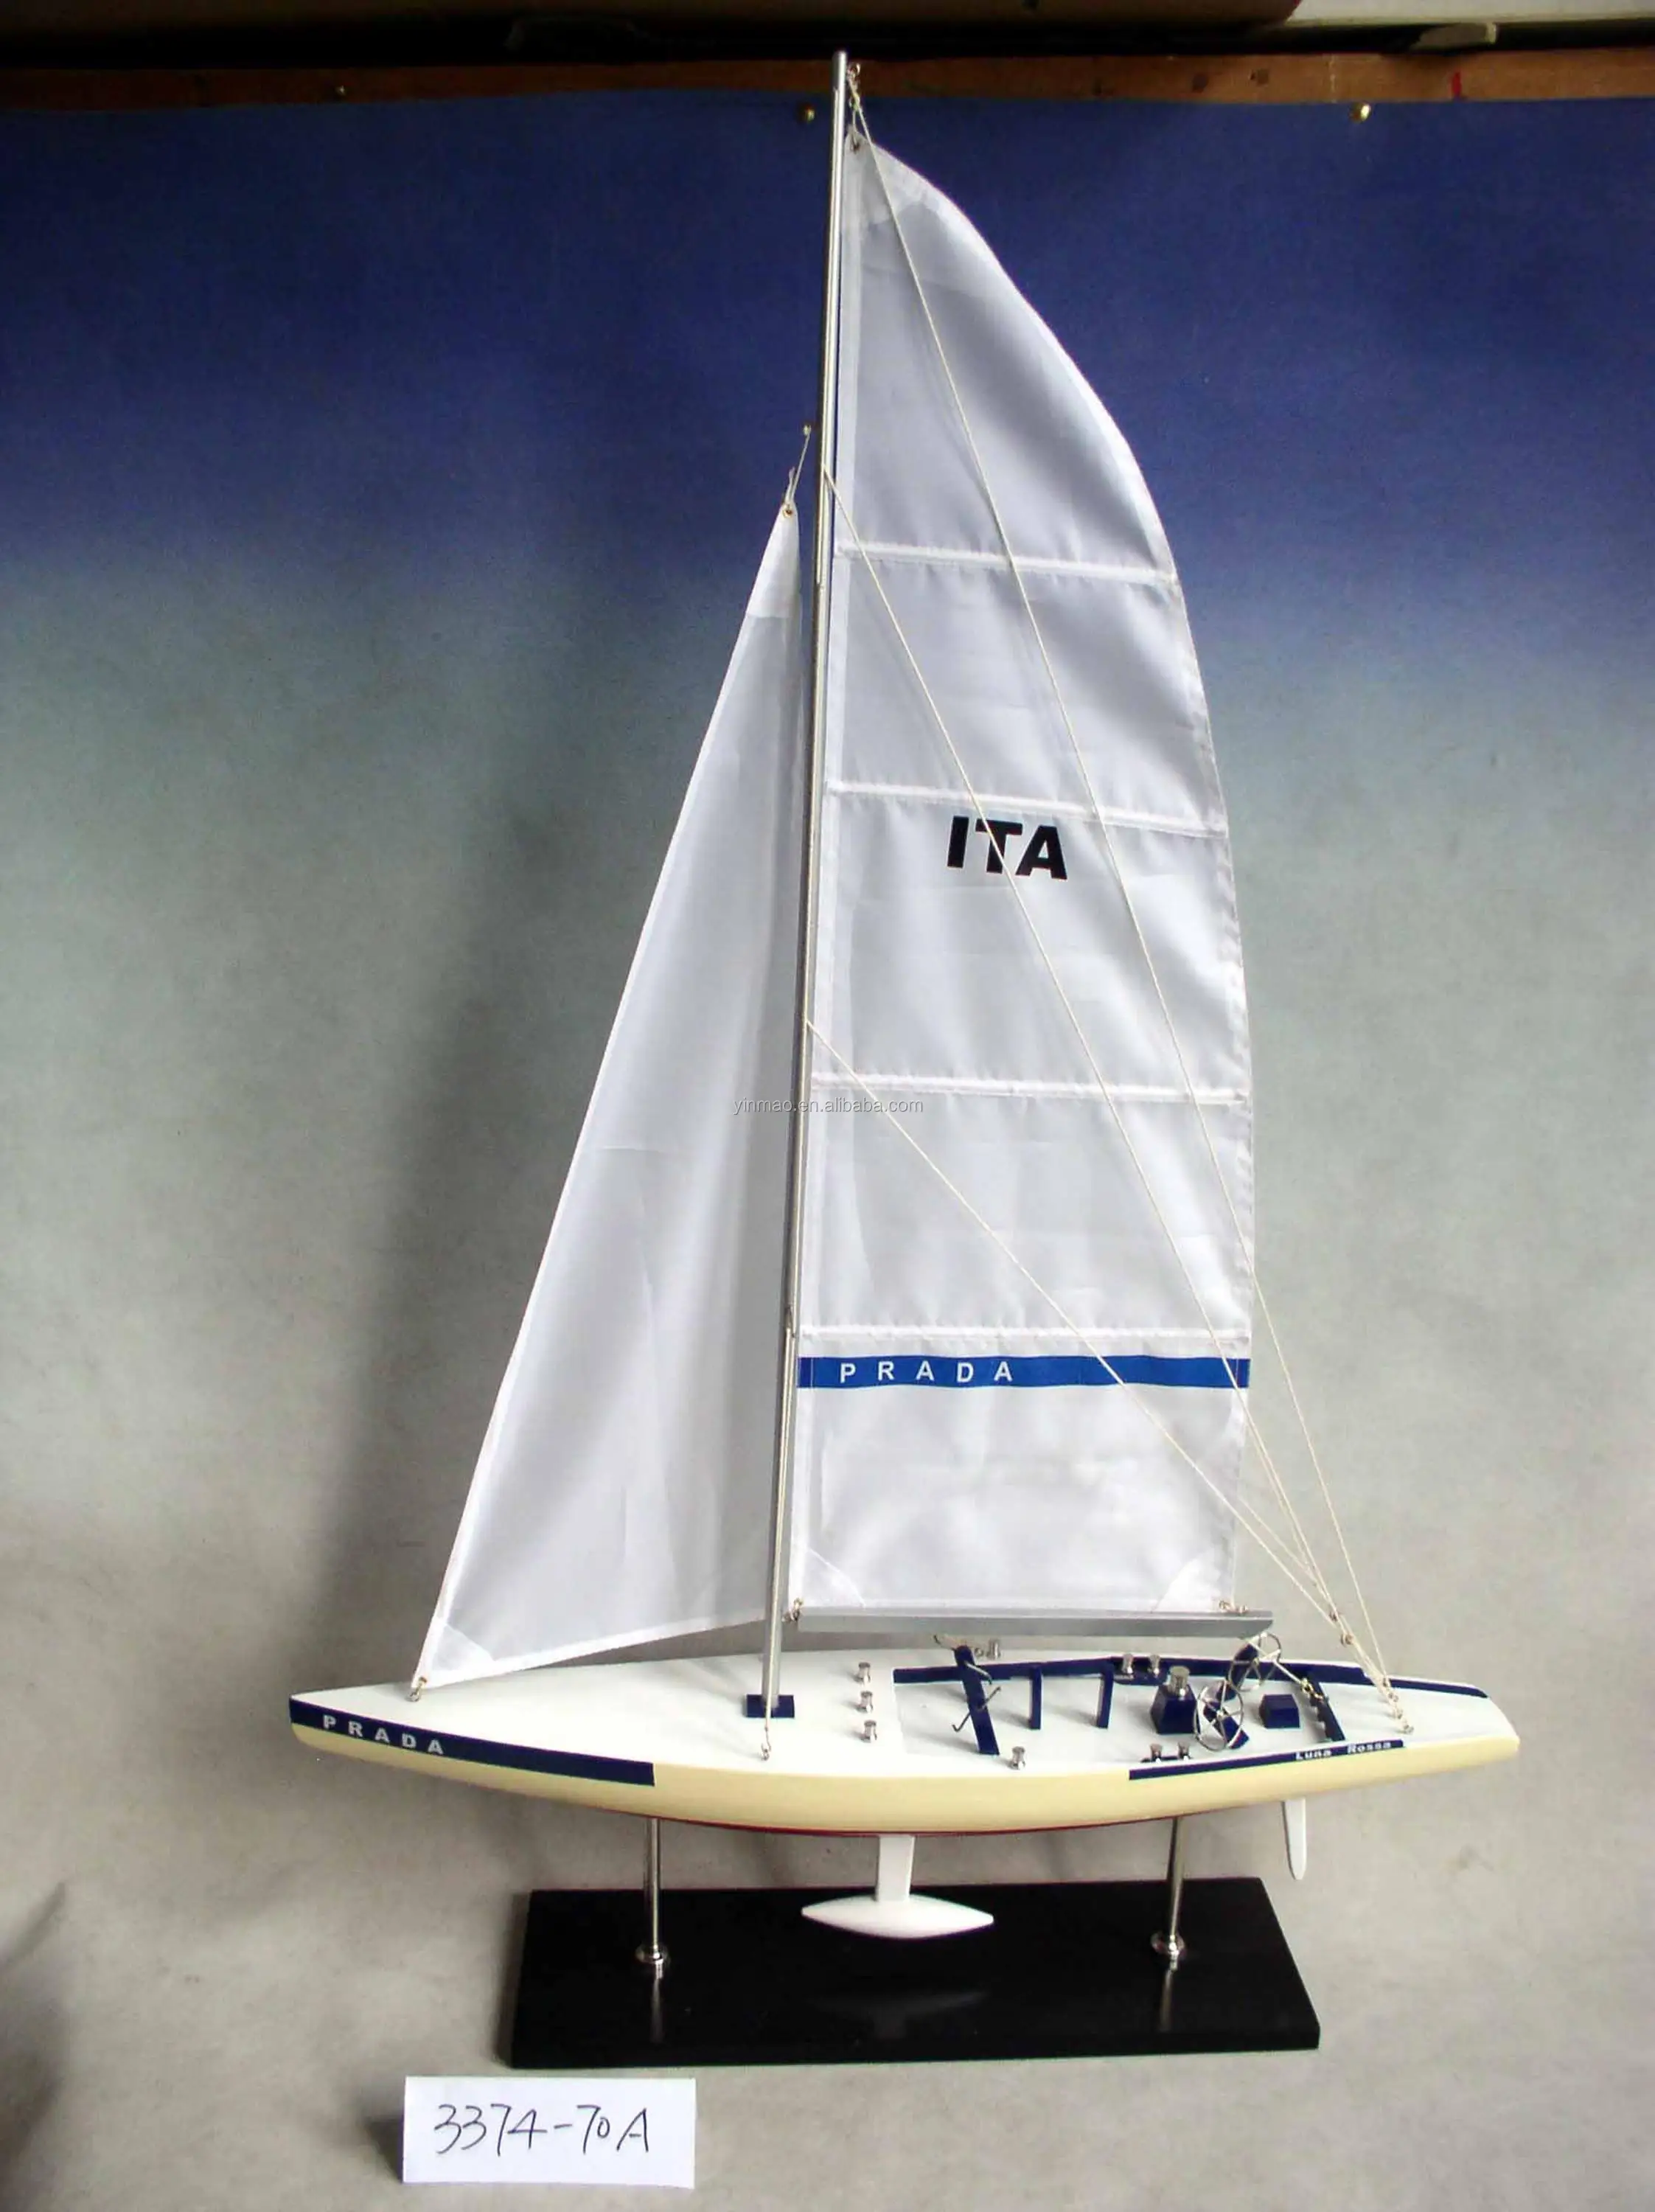 prada sailboat model